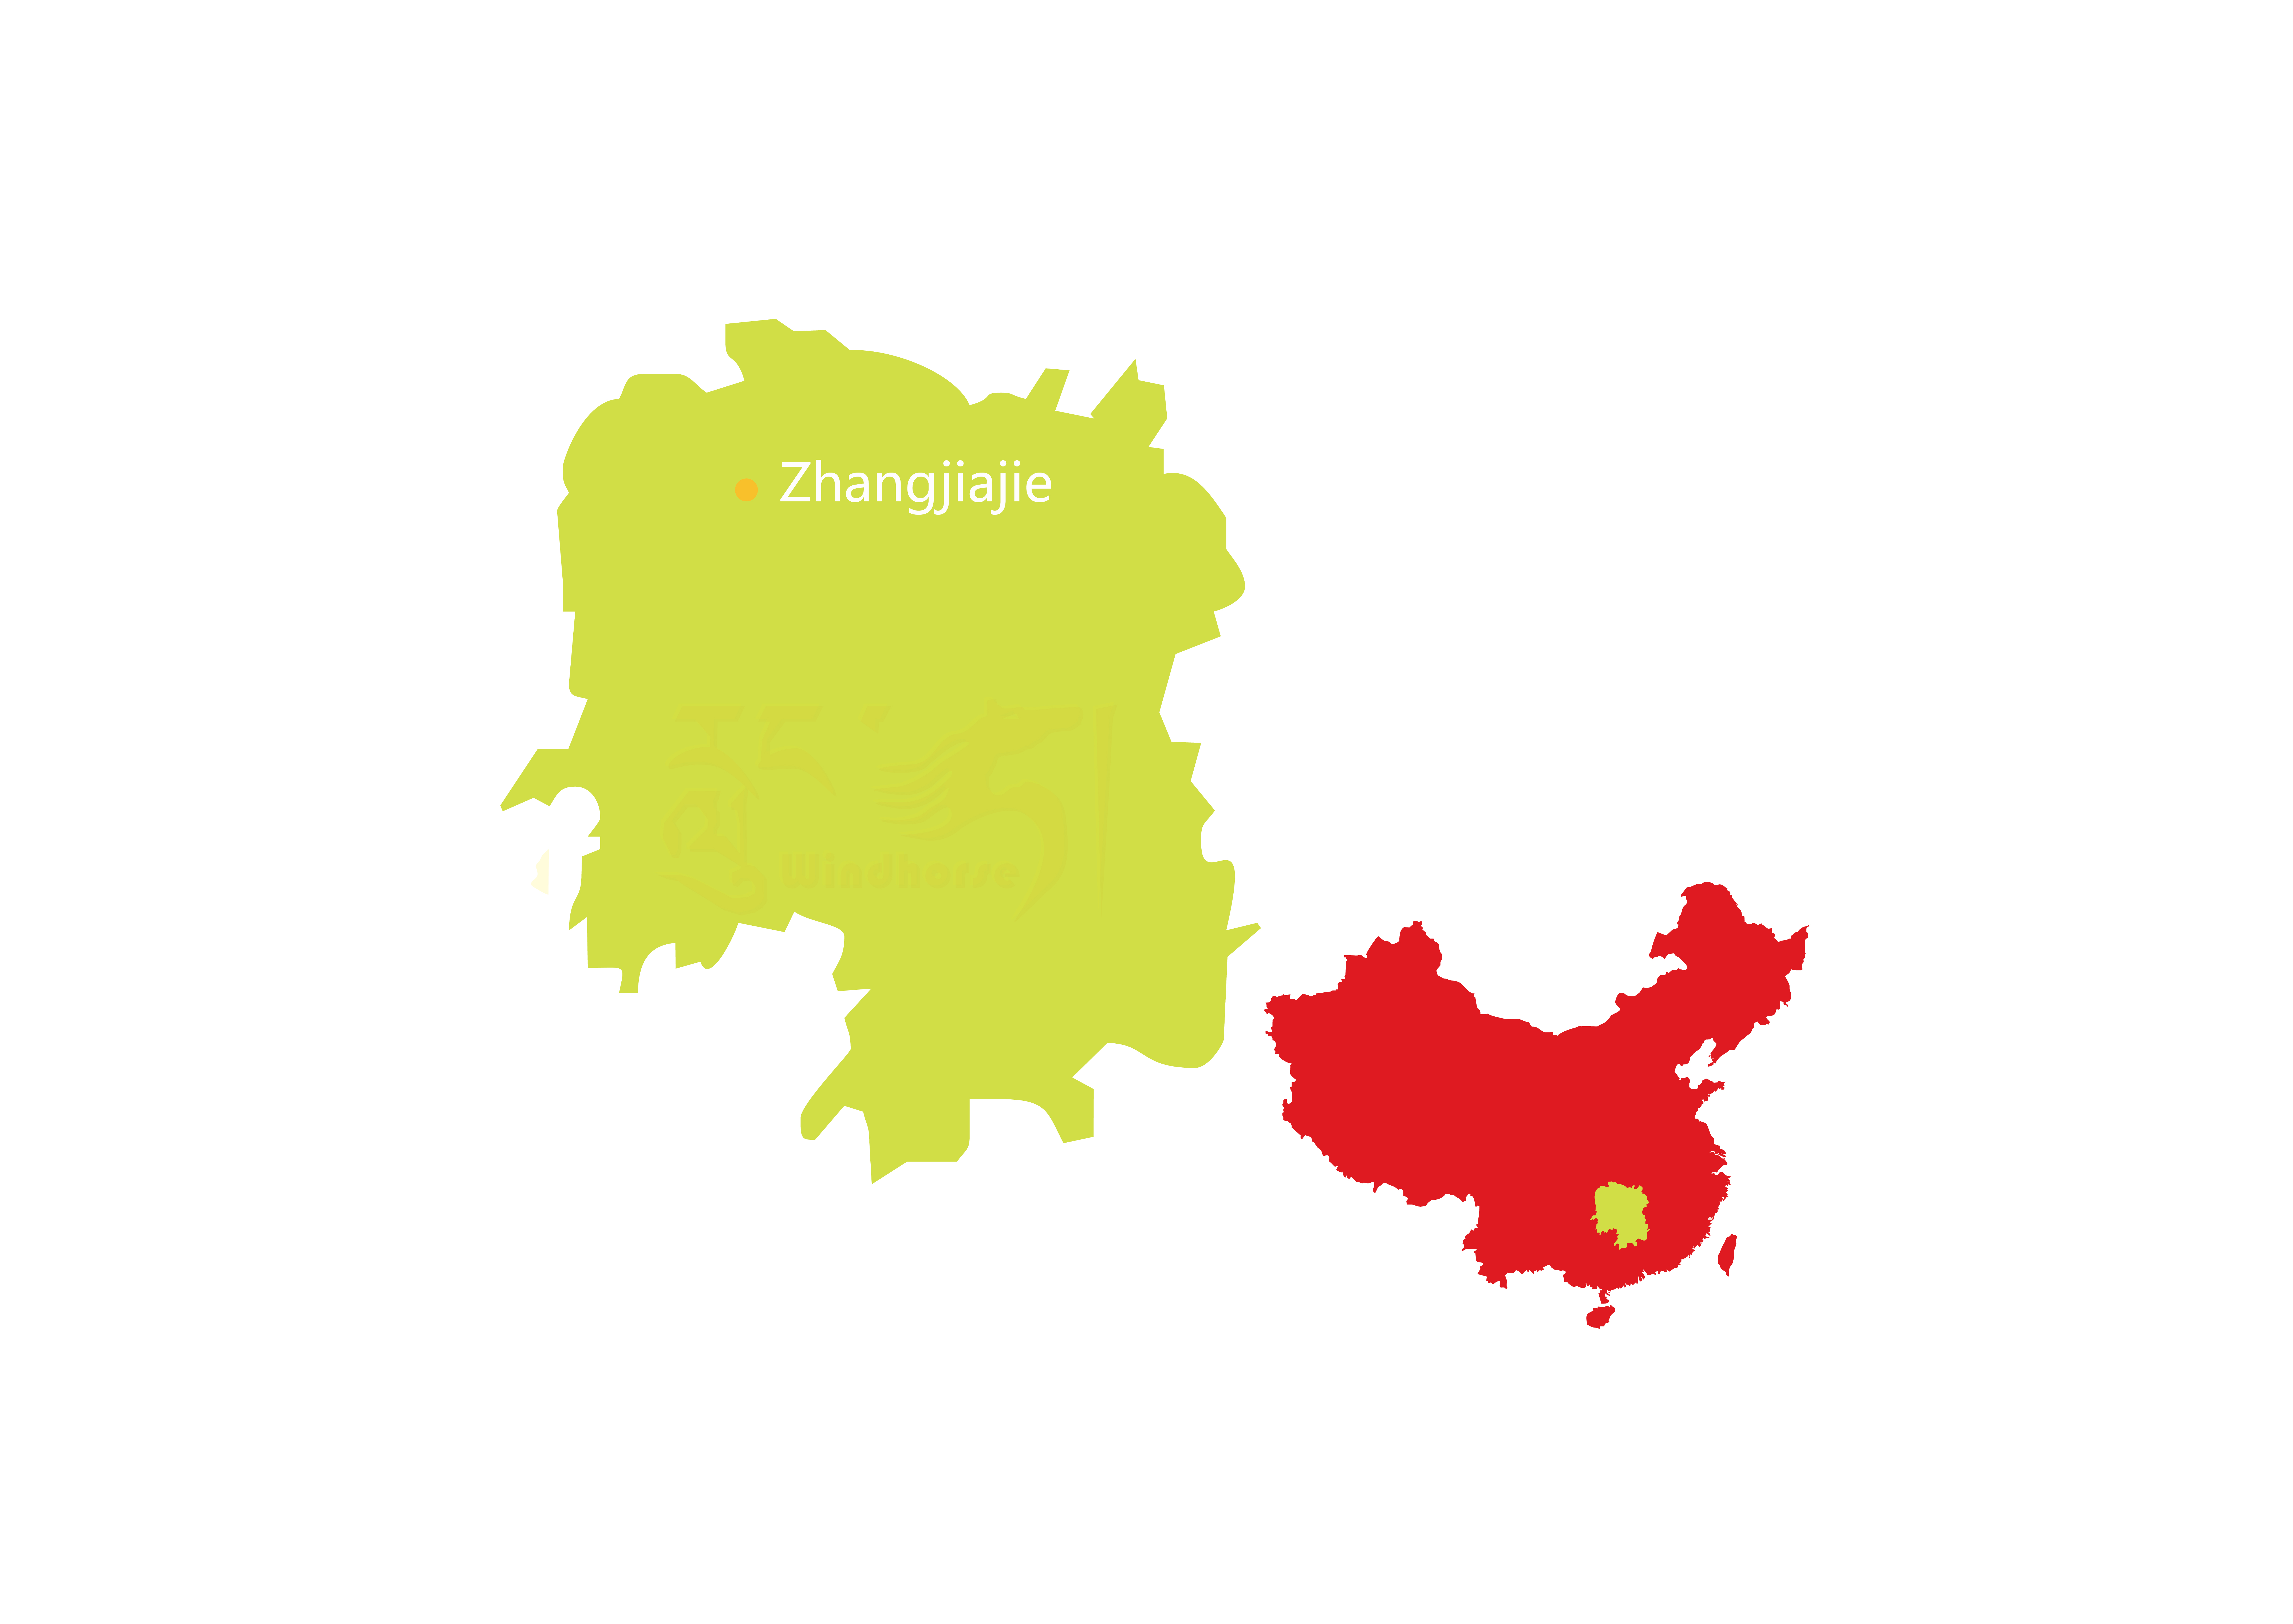 Zhangjiajie national park tour map